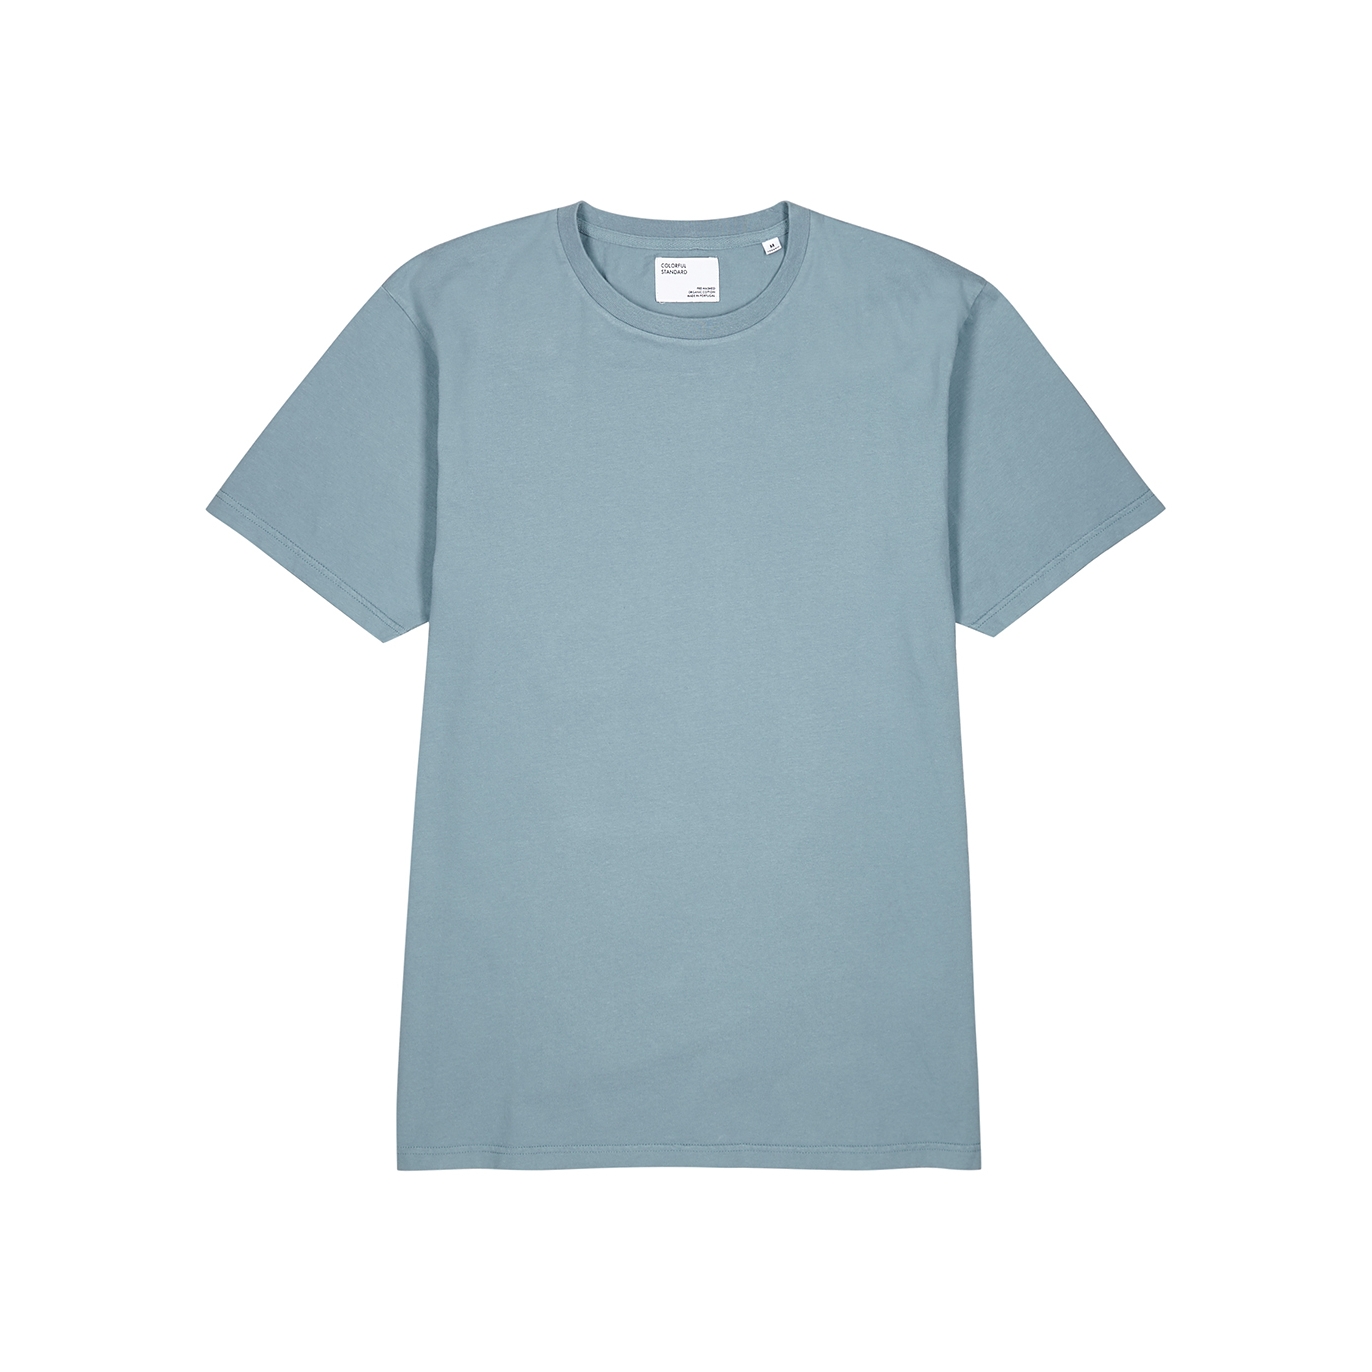 Colorful Standard Blue Cotton T-shirt - S